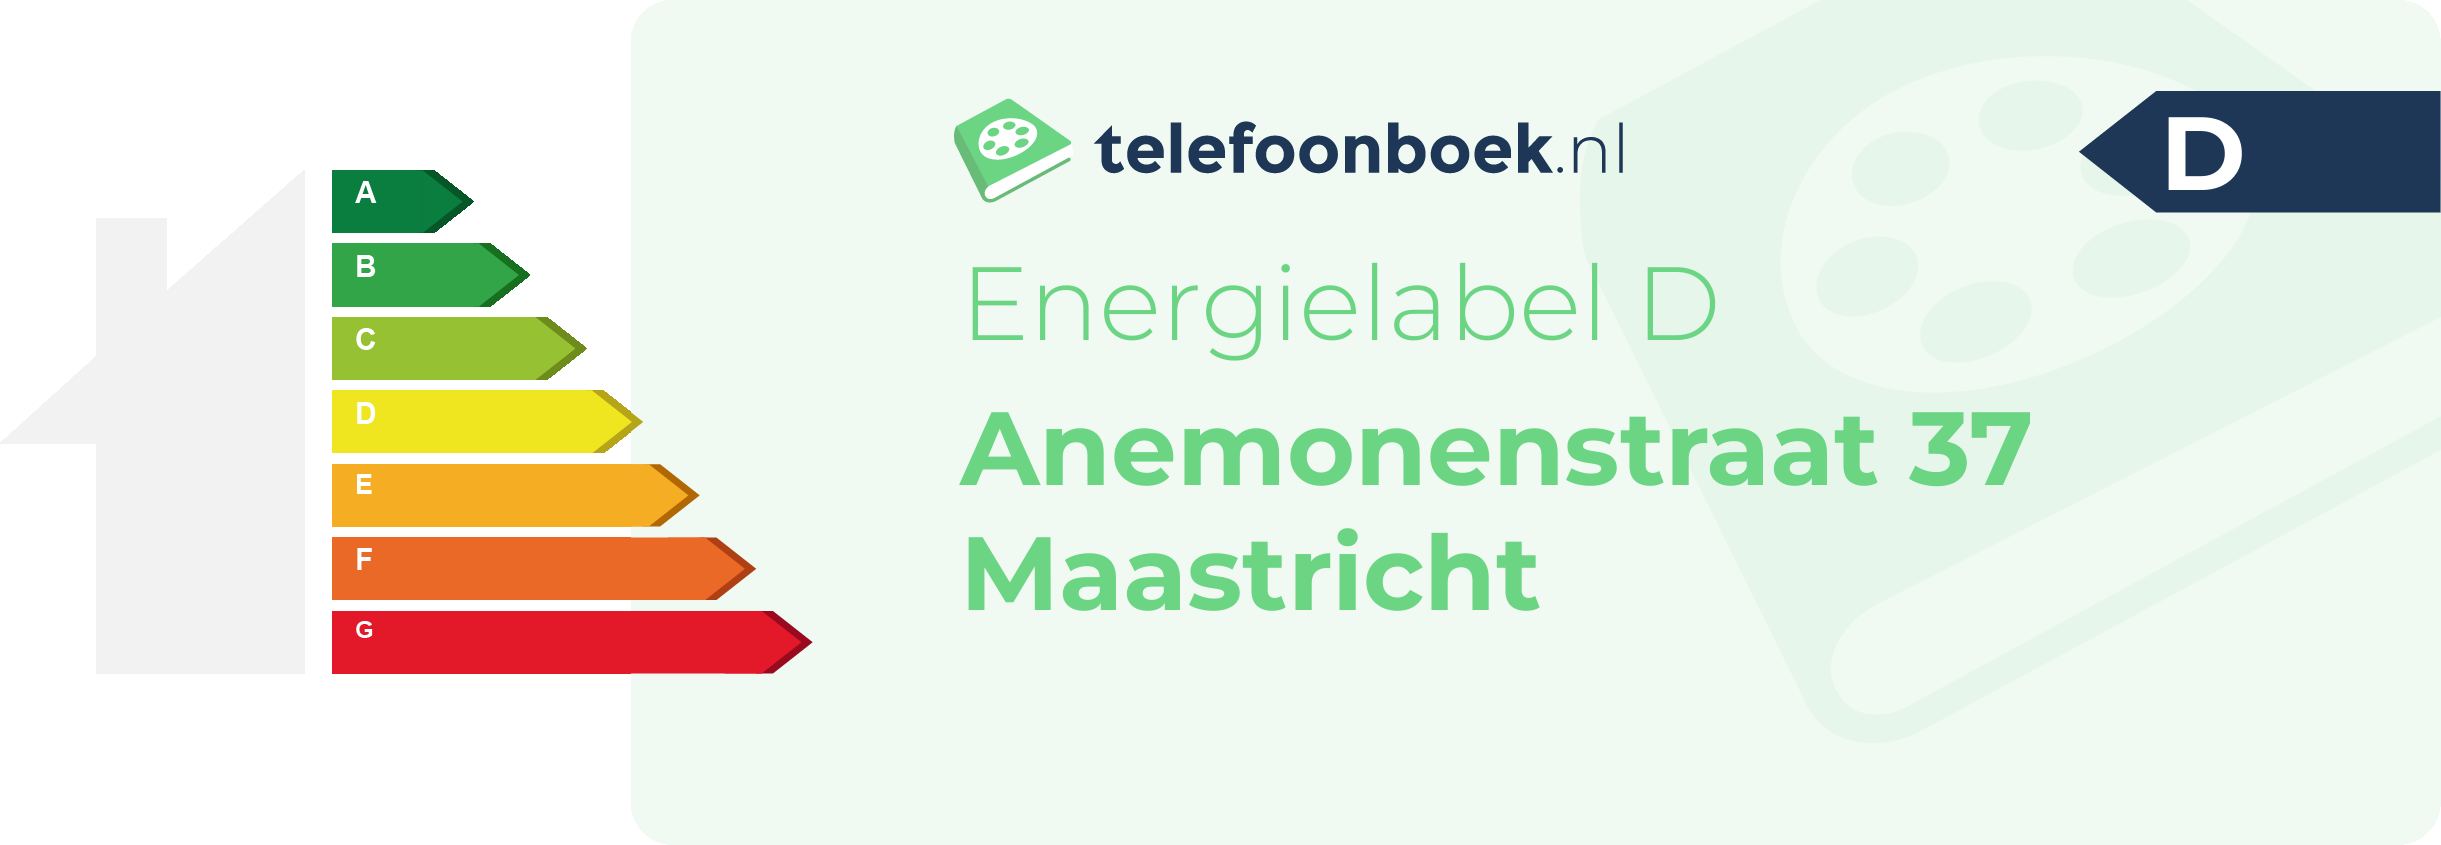 Energielabel Anemonenstraat 37 Maastricht